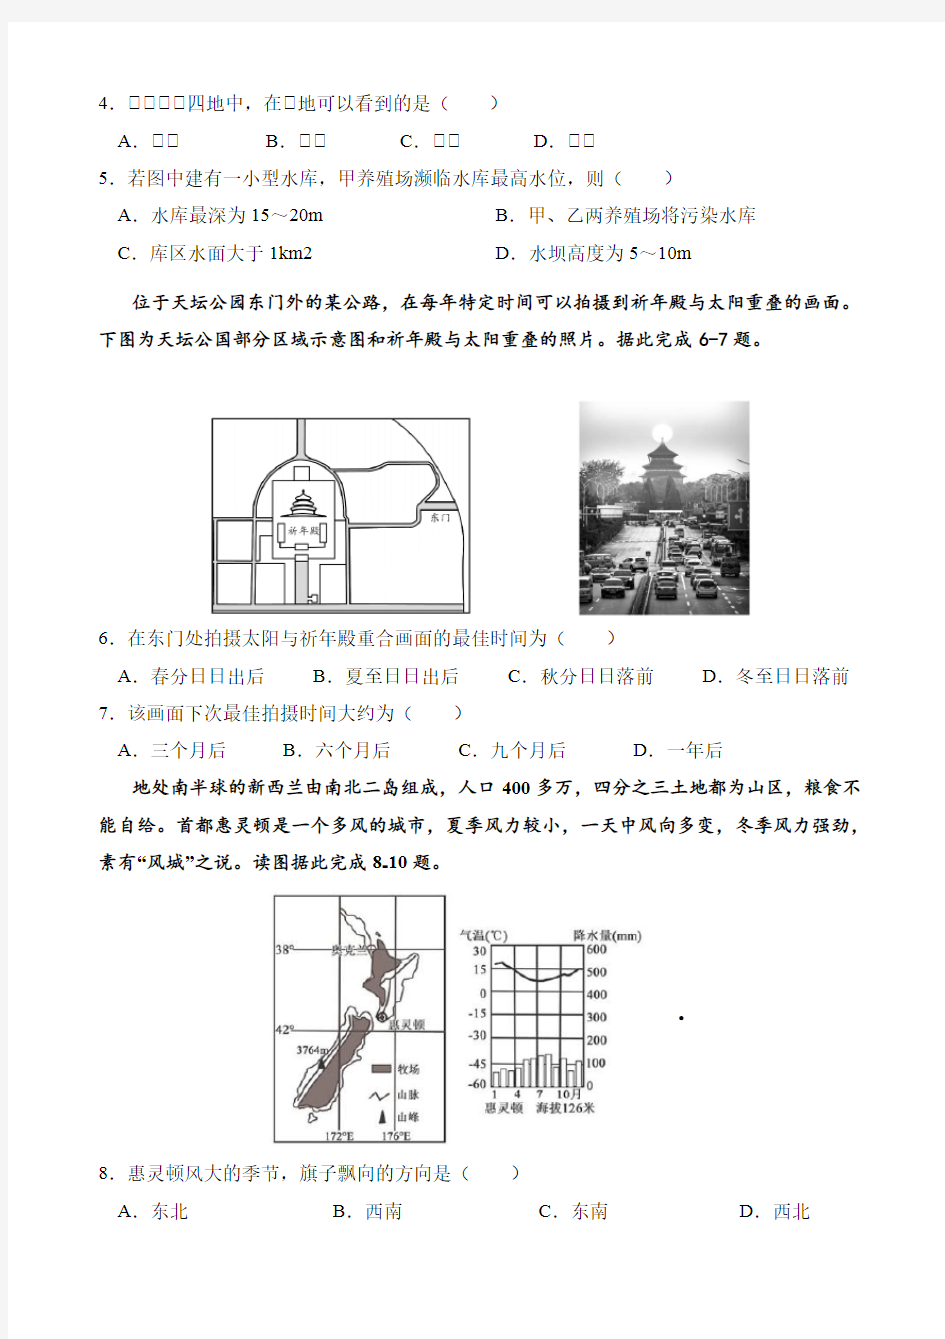 2020-2021学年度江苏省南菁高级中学高二年级综合检测地理卷(一)